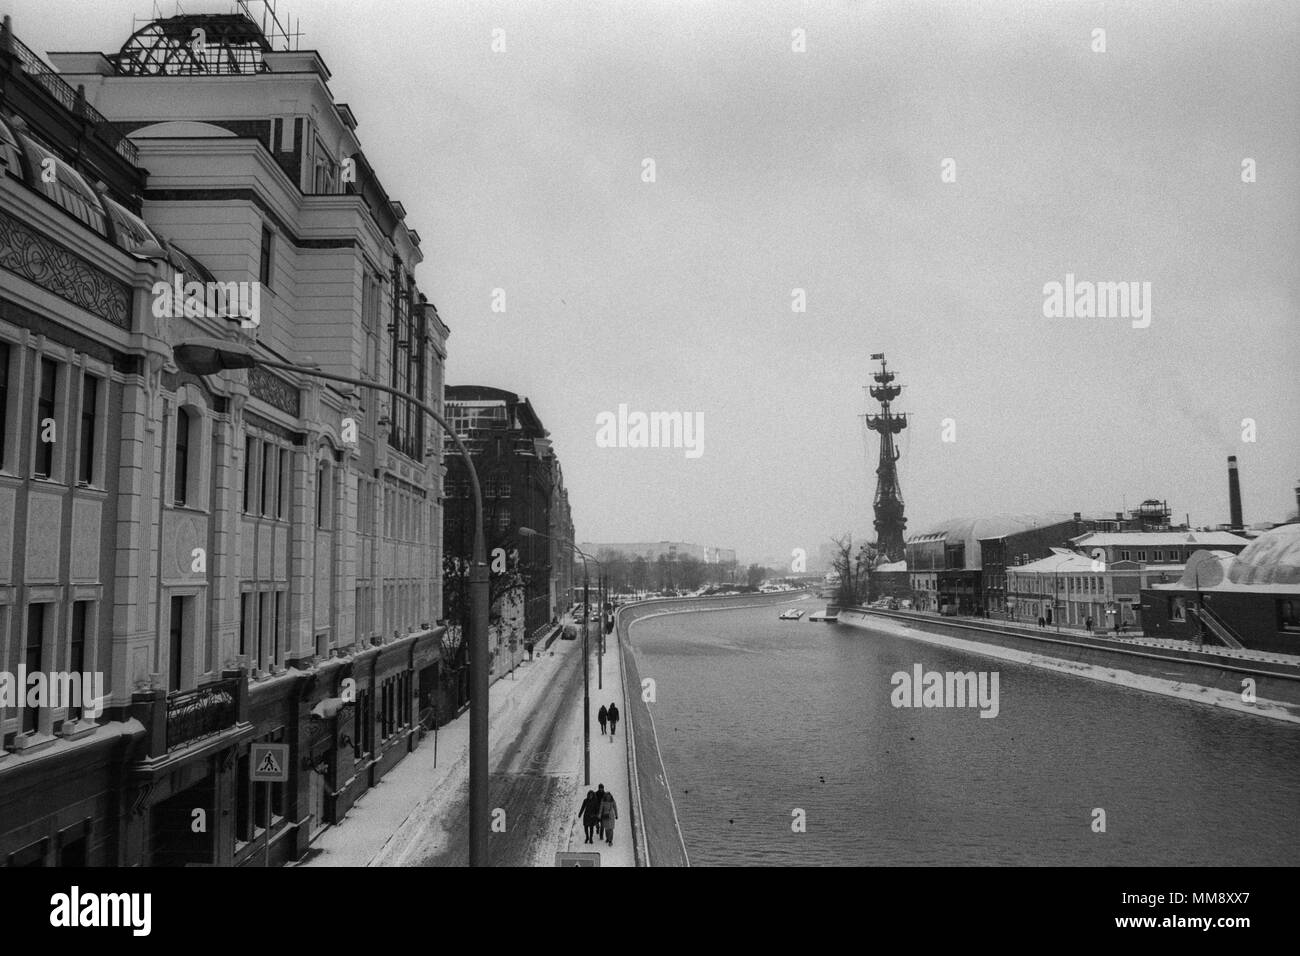 Moscou, Russie - le 17 janvier 2017 : Avis d'Yakimanskaya nab. en hiver. Le noir et blanc 35mm film scanner. - Attention : taille modérée du grain de film - Olympu Banque D'Images